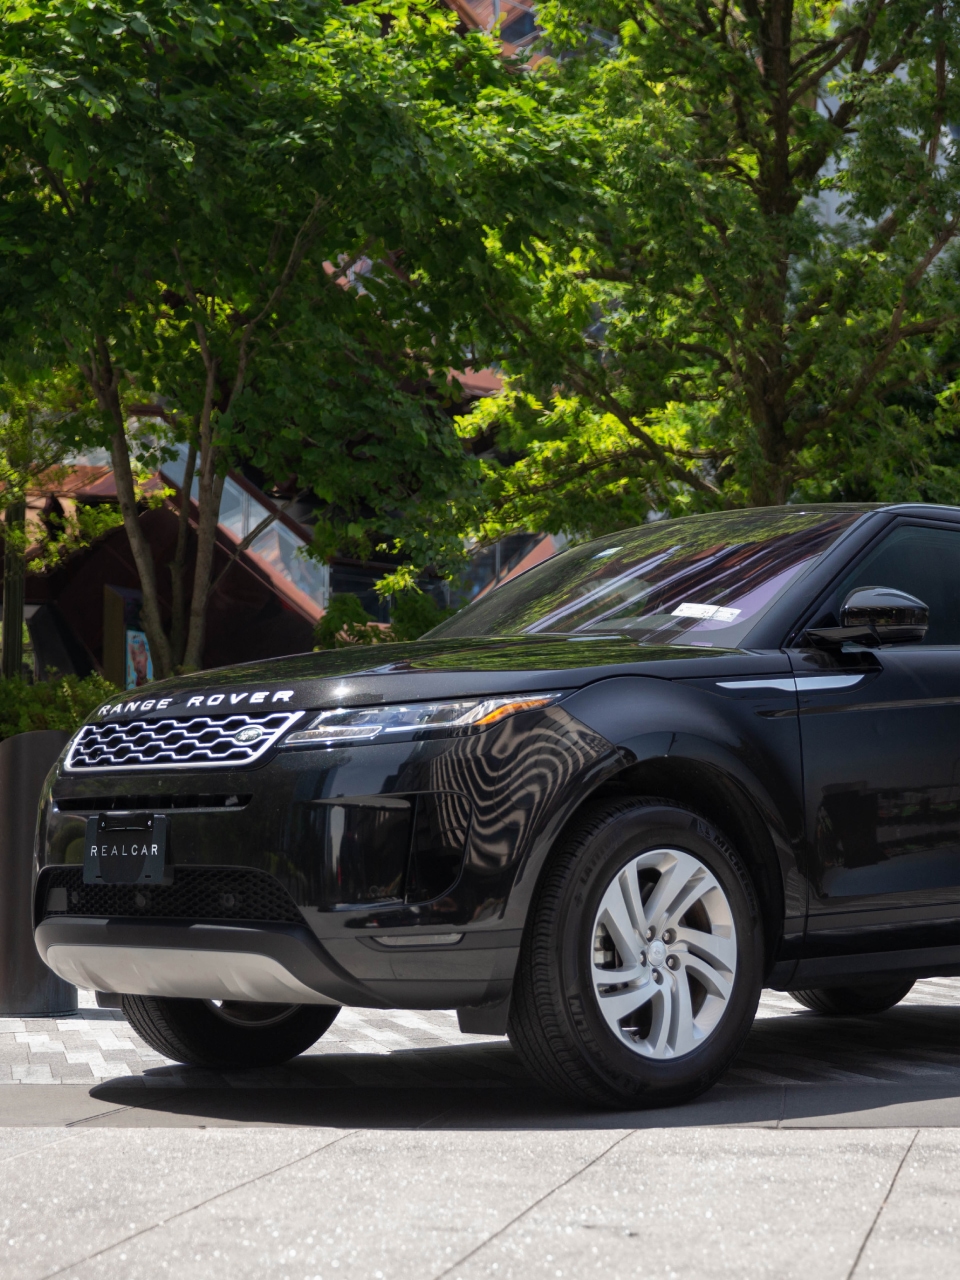 Luxury Range Rover Evoque Rental NYC